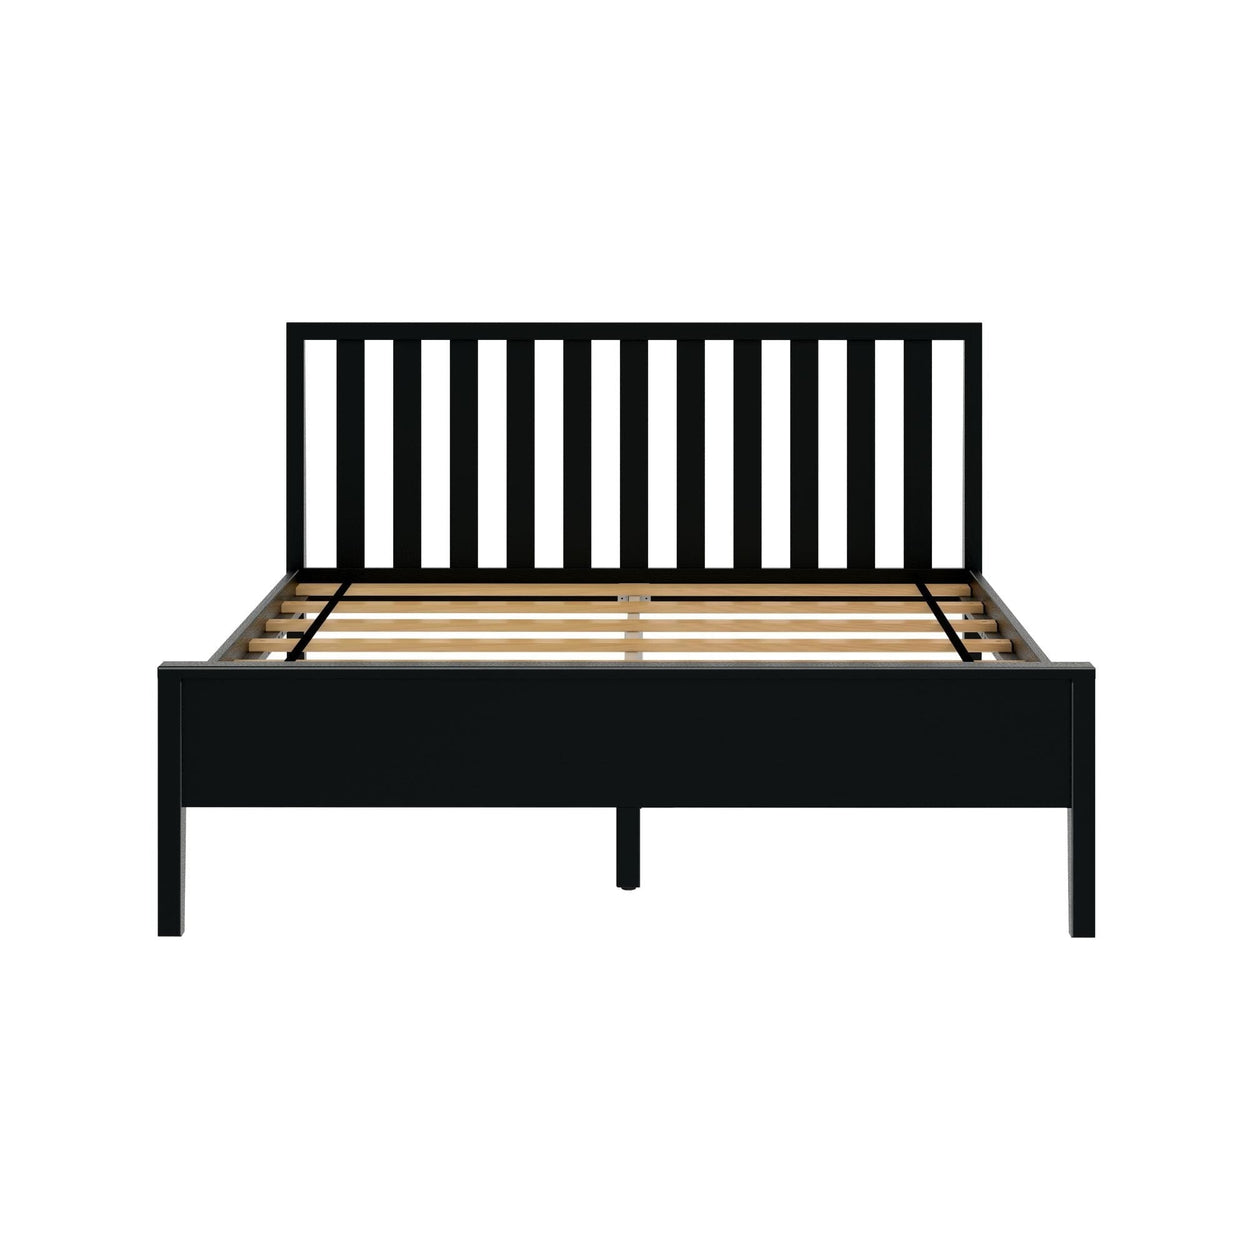 210312-170 : Kids Beds Scandinavian Queen-Size Bed with Slatted Headboard, Black